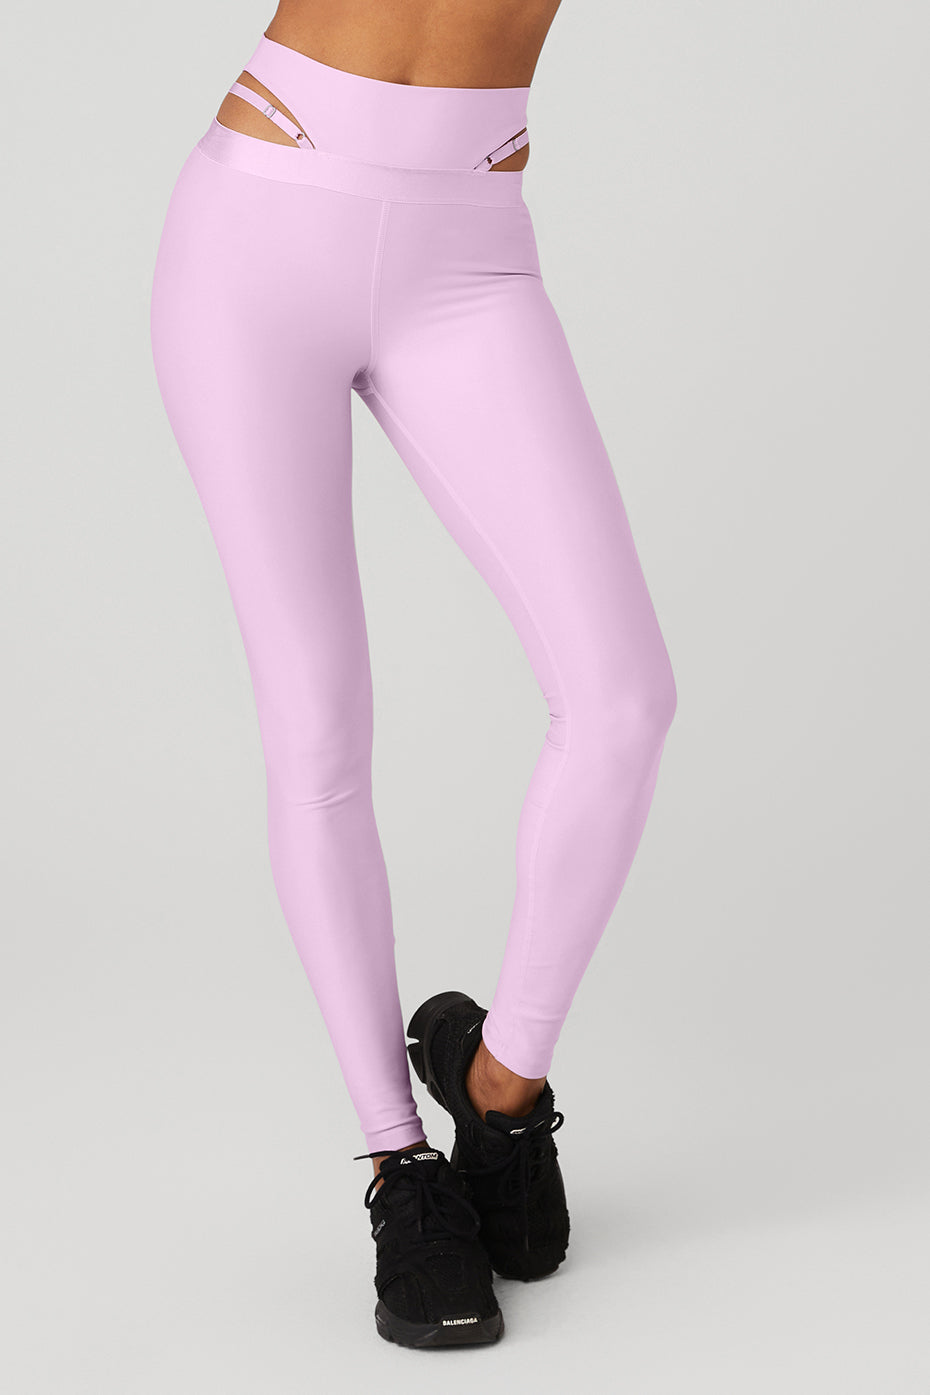 Alo Yoga Soft leggings 🩷cutest pink color Size XXS - Depop